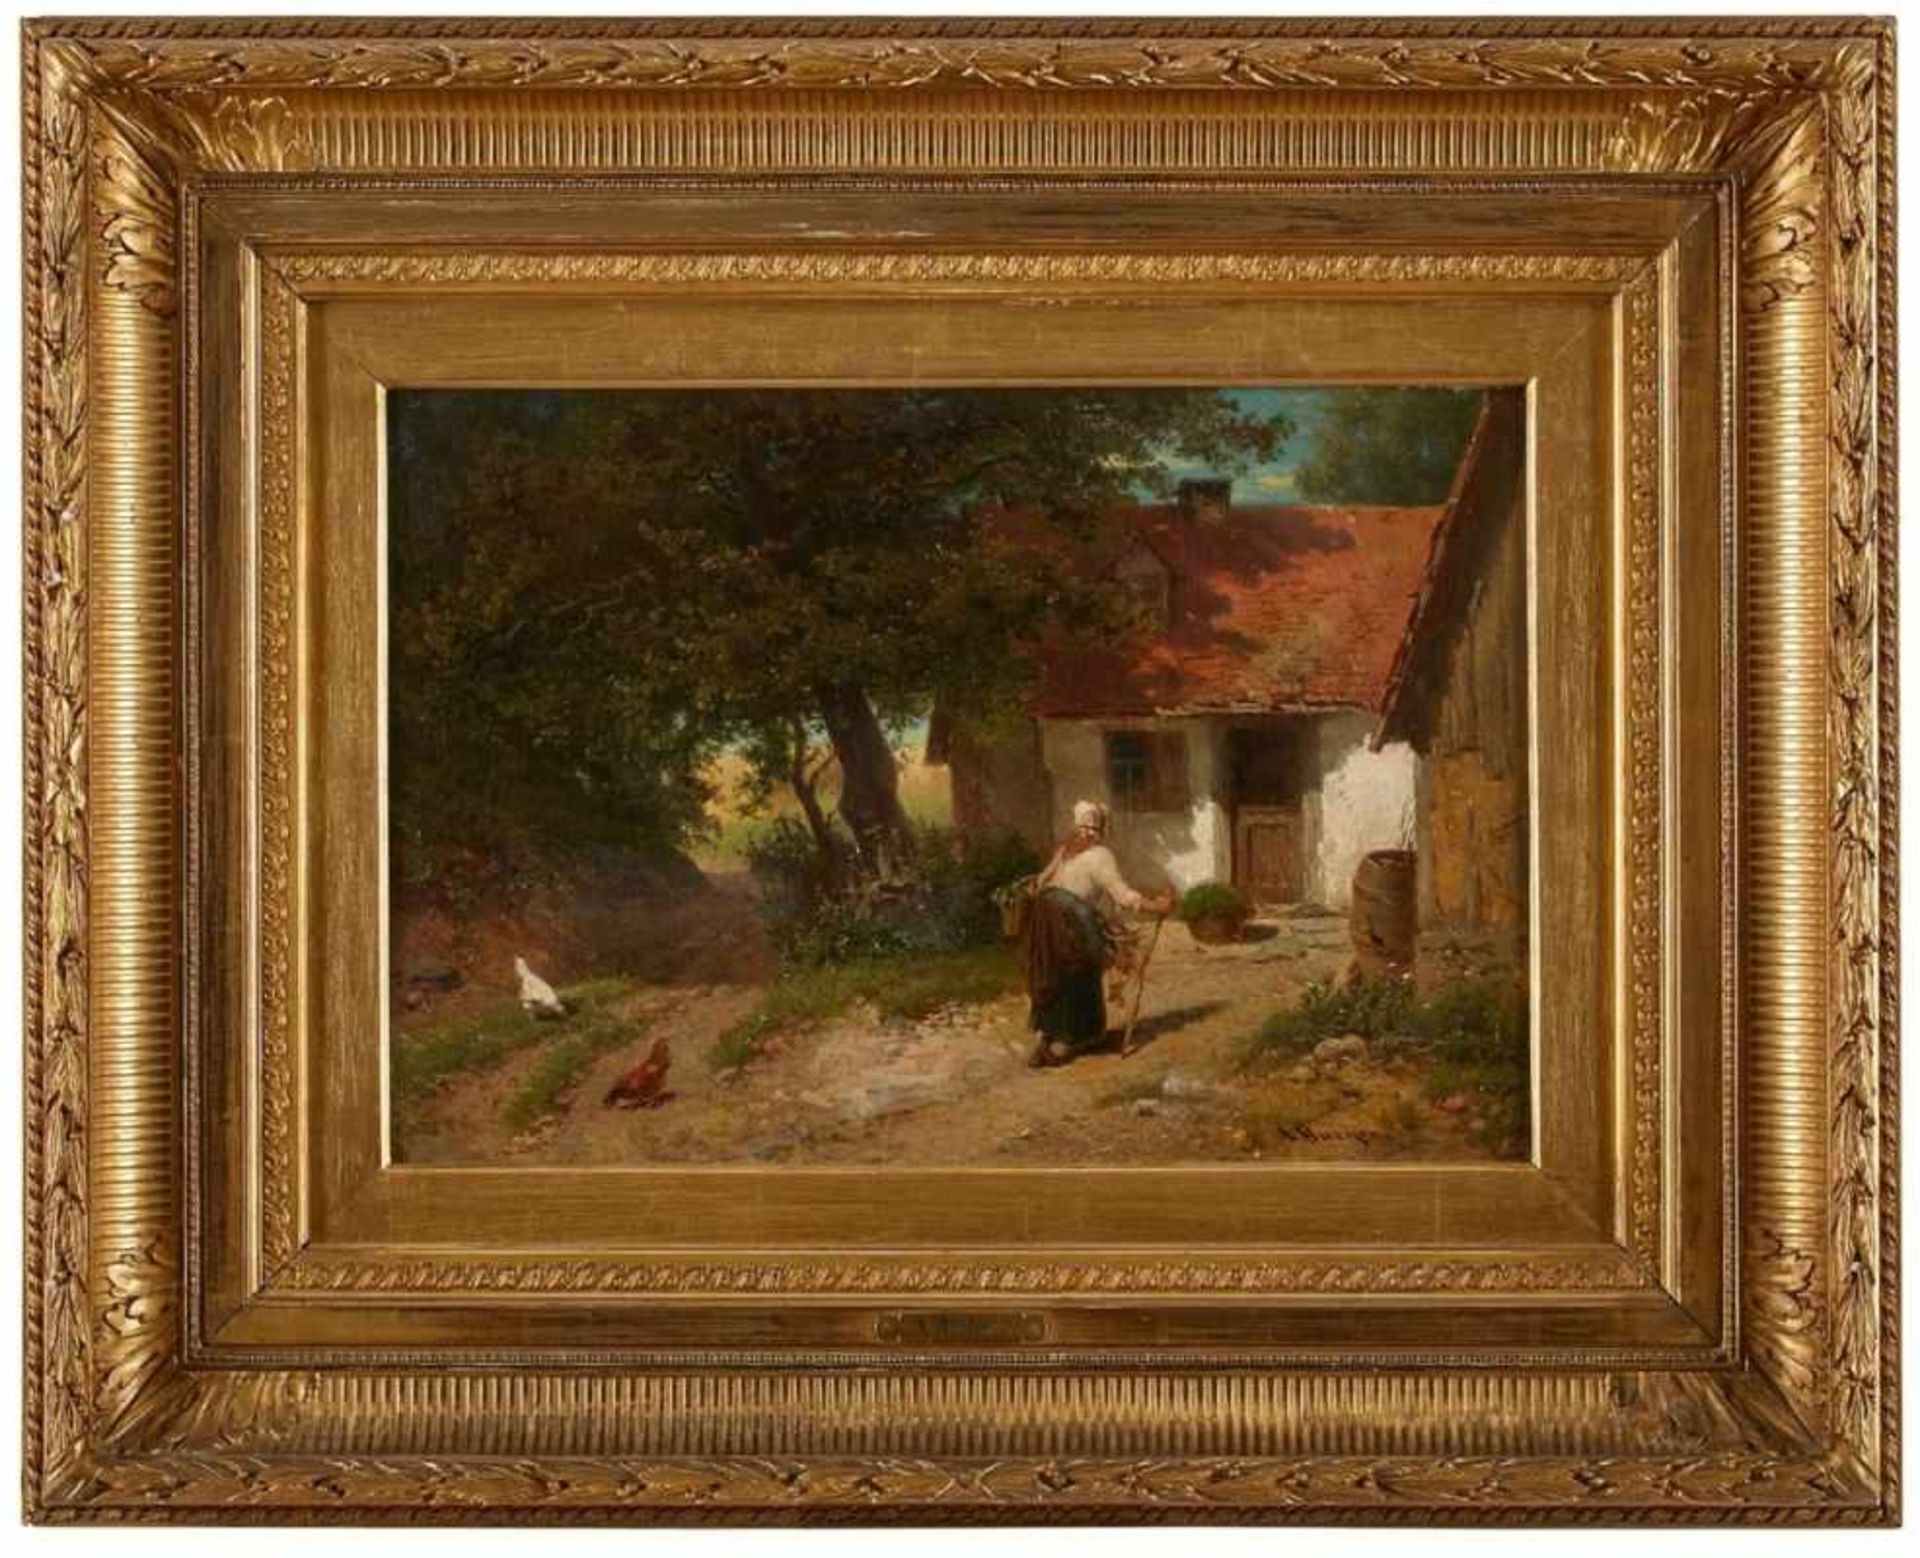 Gemälde Anton Burger1924 Frankfurt - 1905 Kronberg Genre- u. Landschaftsmaler, lernt zunächst beim - Image 2 of 2